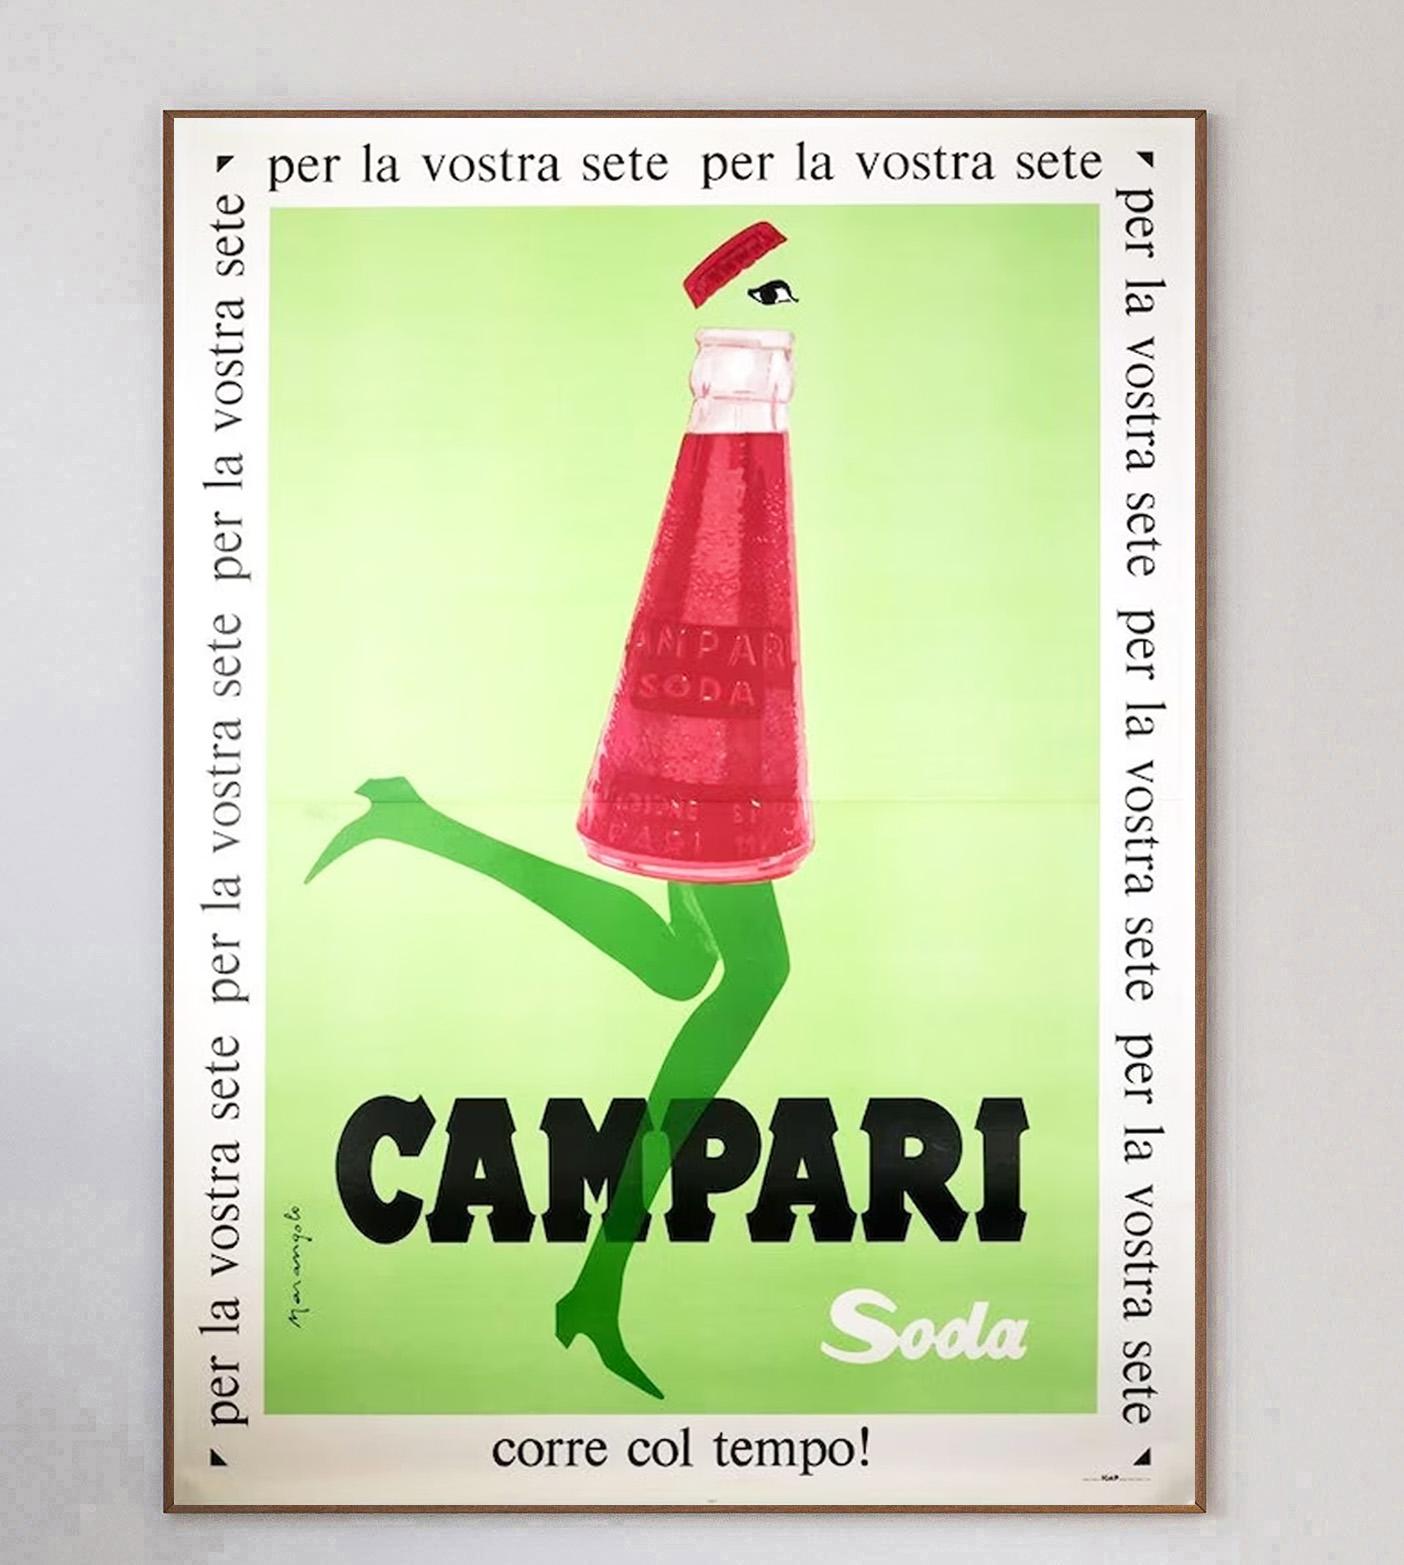 Campari a été formé en 1860 par Gaspare Campari et l'apéritif est toujours aussi populaire aujourd'hui. Son fils, Davide Campari, a transformé l'entreprise en 1926 en ce qu'elle est aujourd'hui largement connue. Cette magnifique affiche